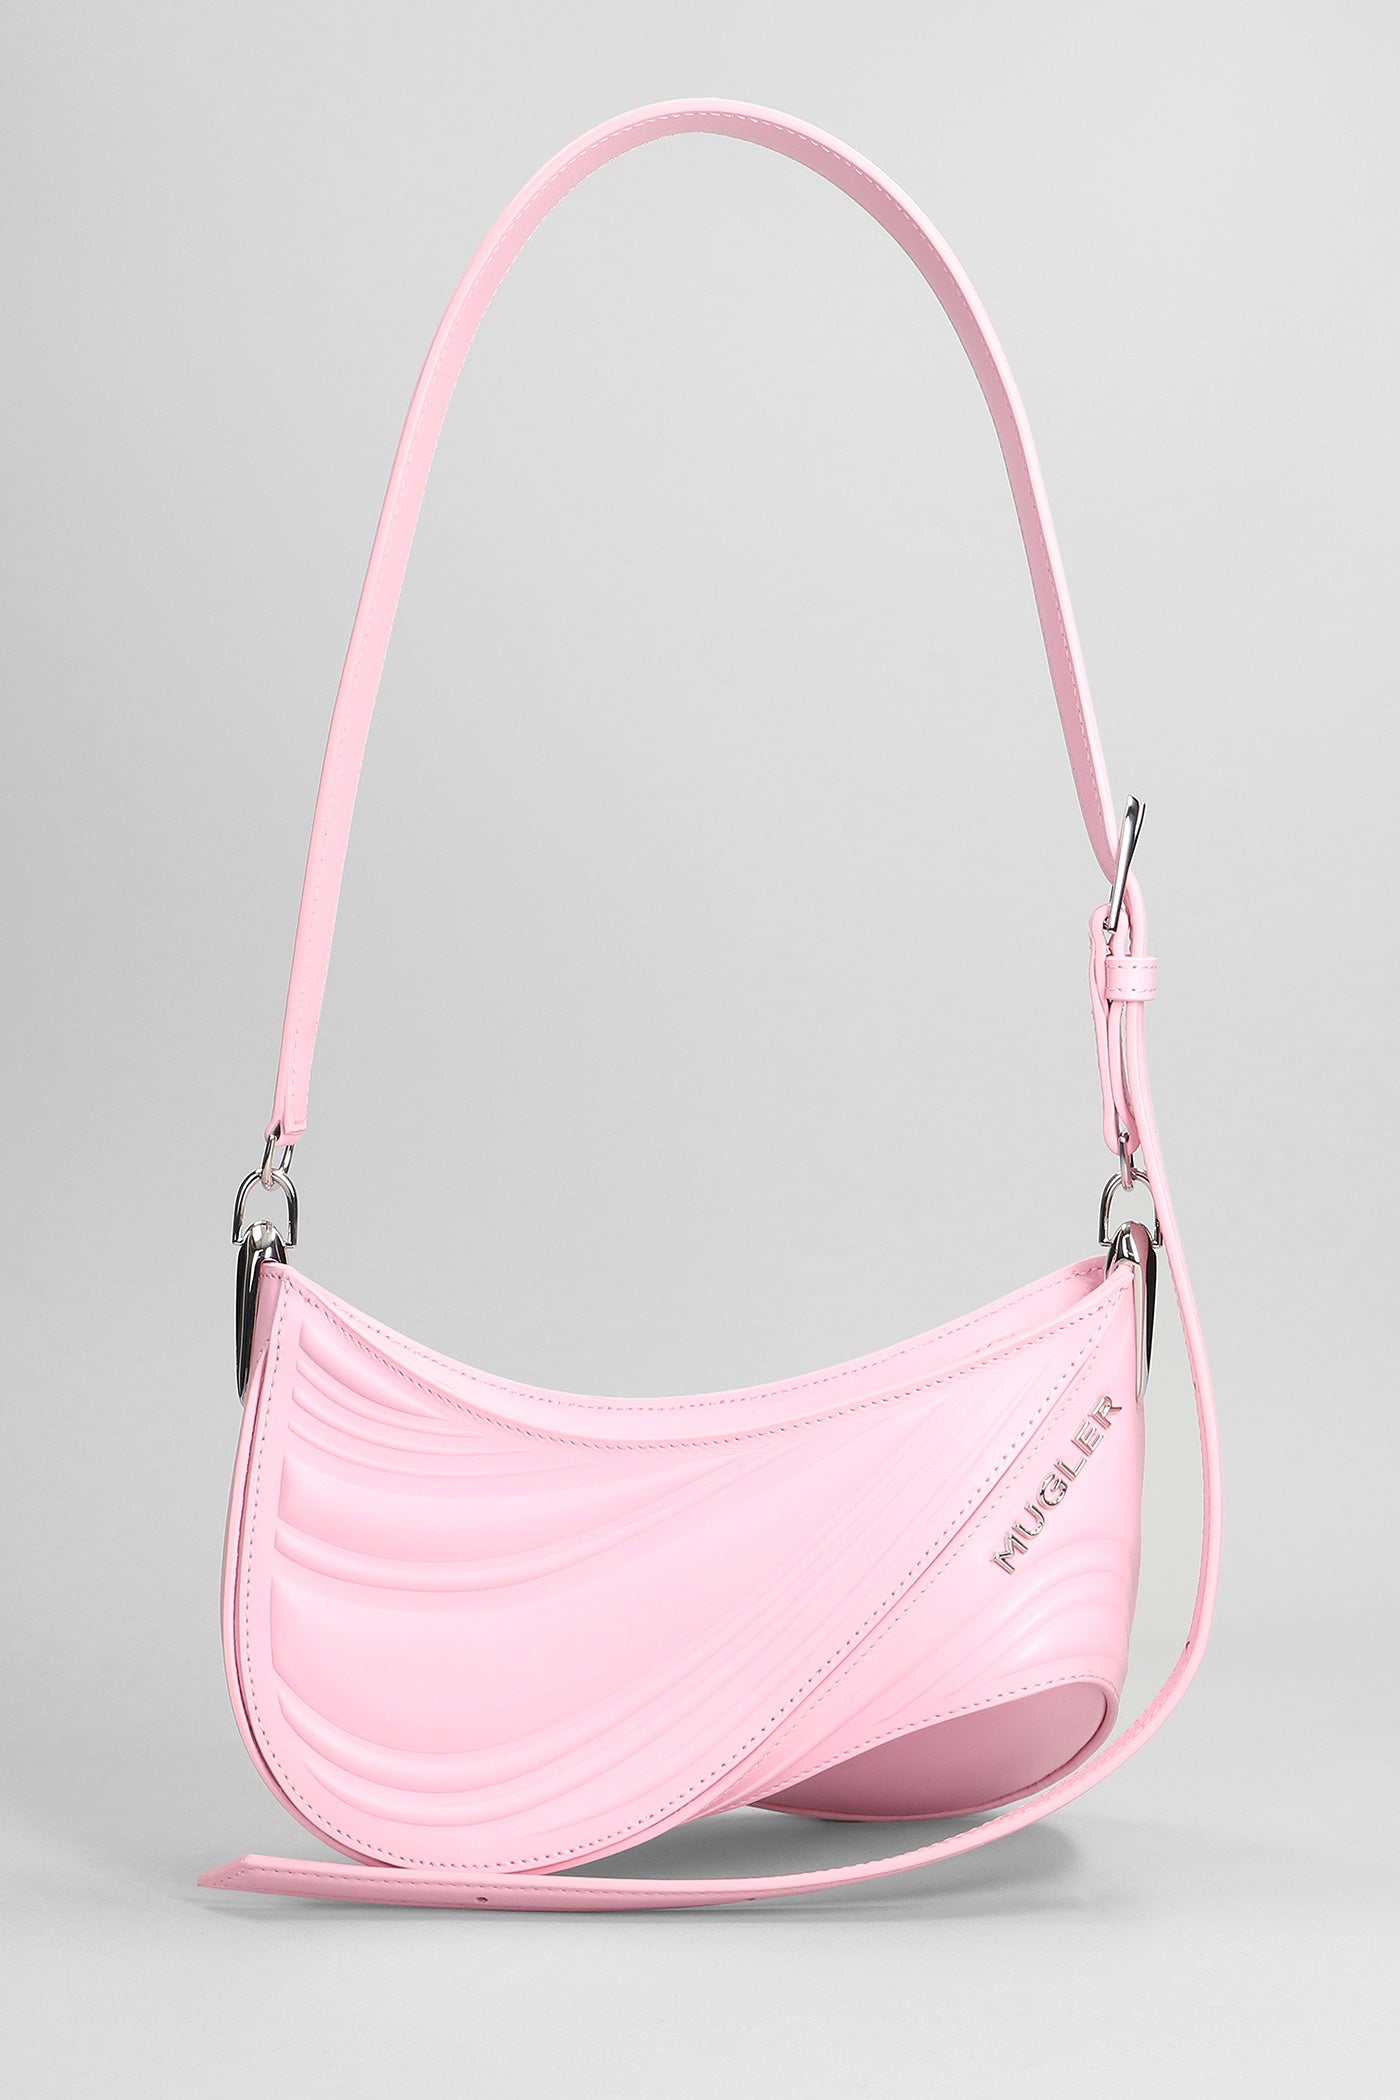 Mugler - Spiral Small Shoulder bag in rose-pink leather